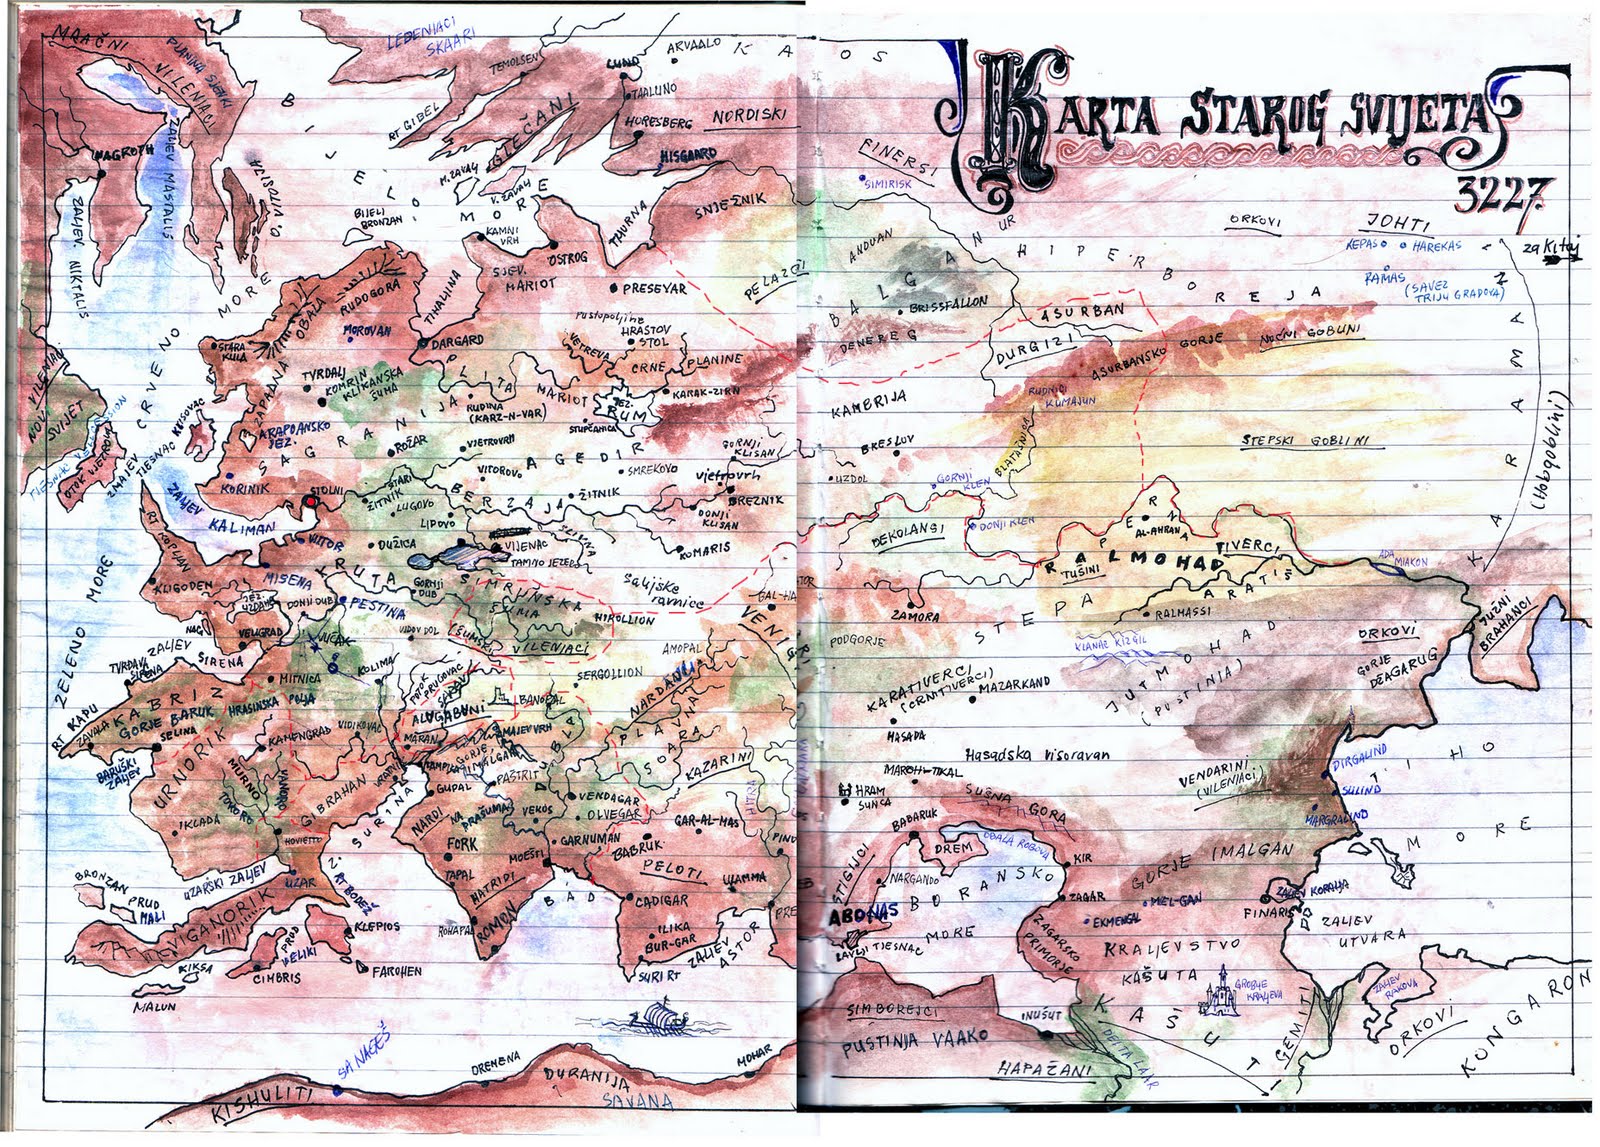 karta starog svijeta Sagranija   Karta Starog Svijeta 3227. | Eydis ~ Fantasy & SF  karta starog svijeta